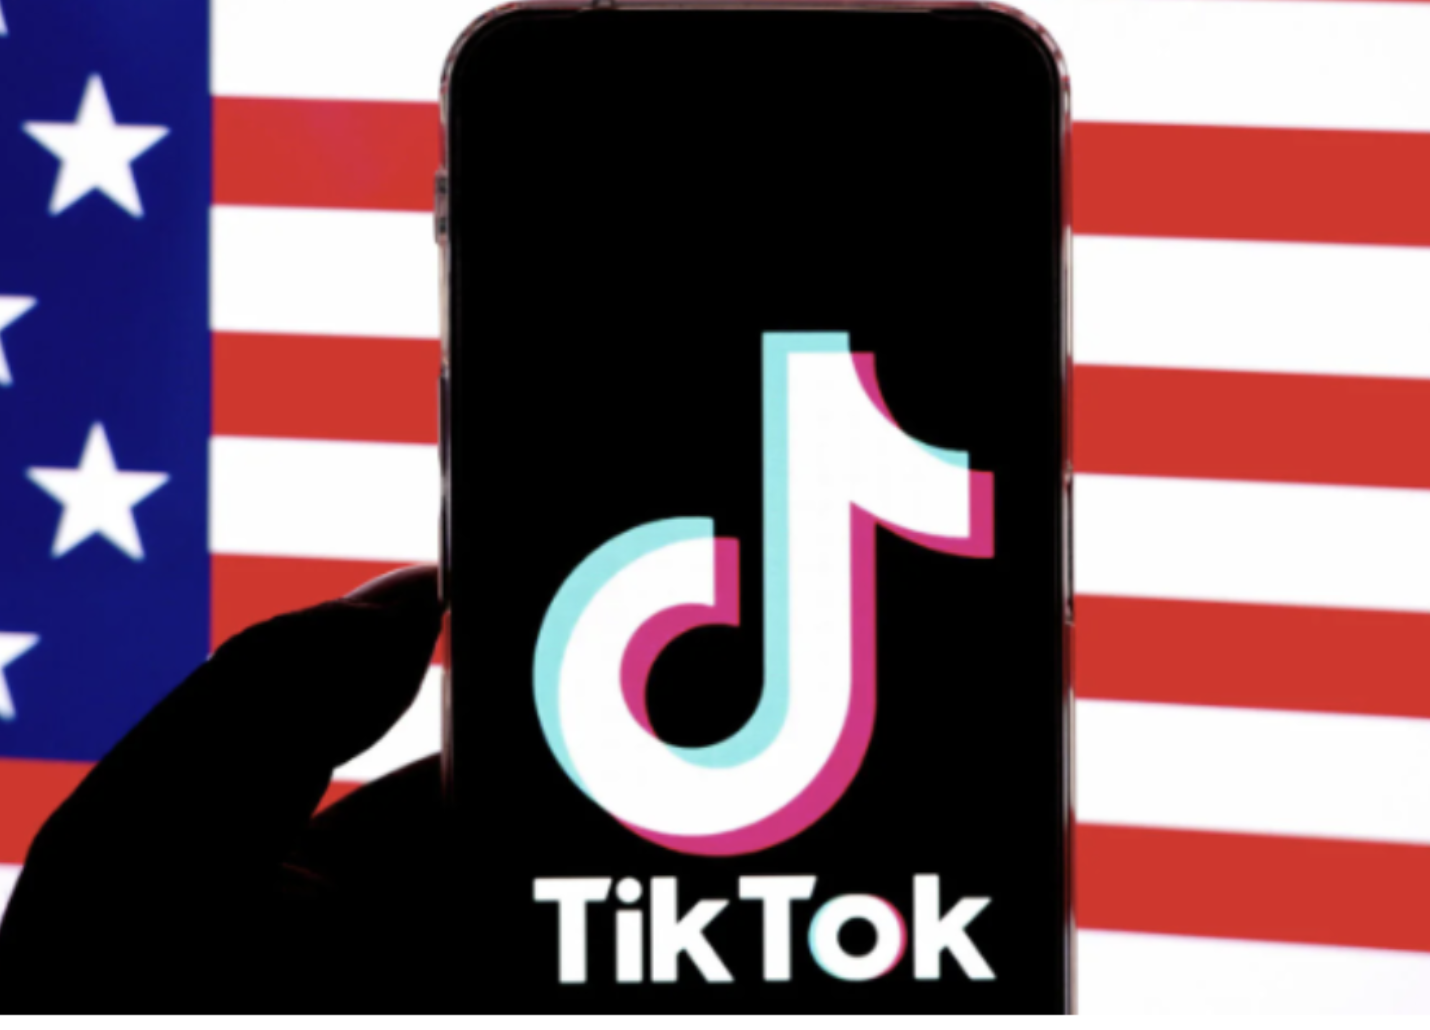 Tik Tok Logo behing USA Flag